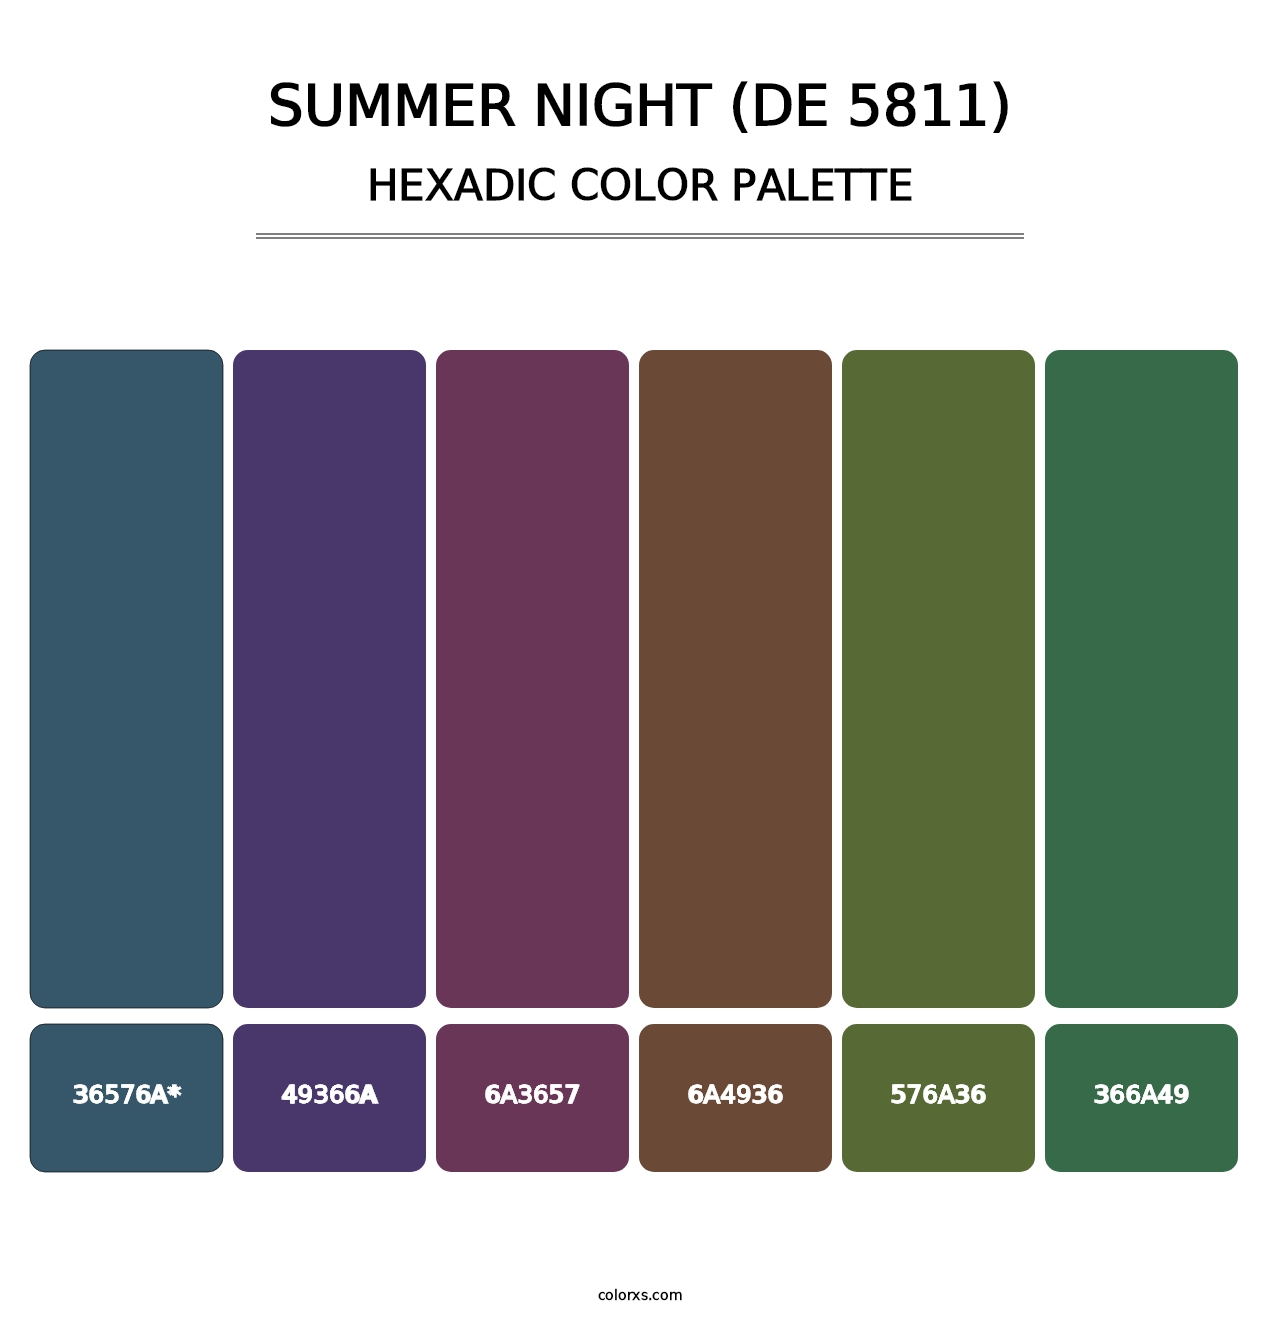 Summer Night (DE 5811) - Hexadic Color Palette